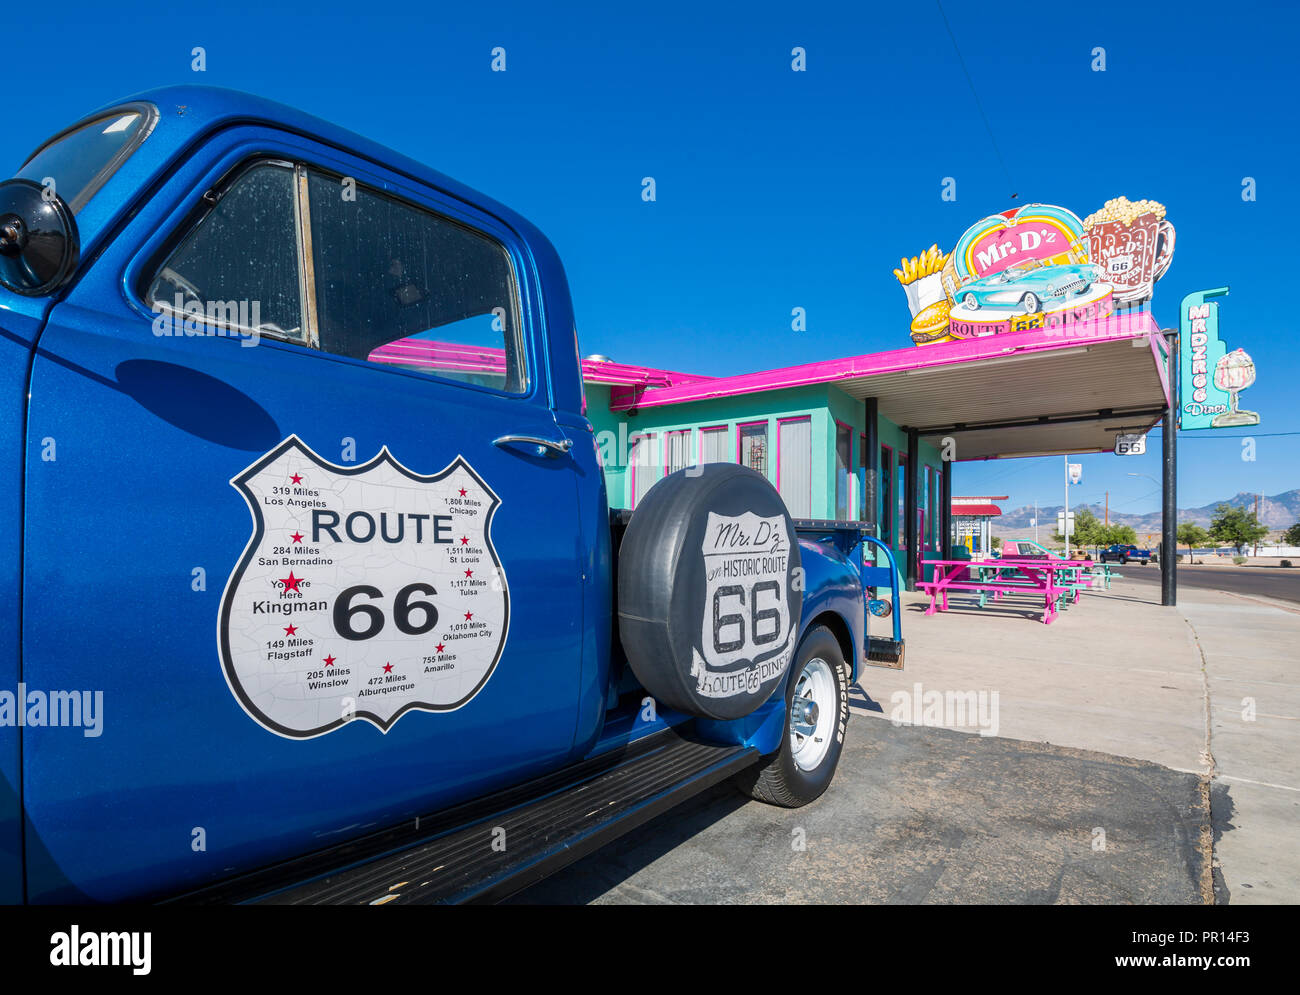 Avis de vintage station wagon et M. D'z Diner sur la Route 66 dans la région de Kingman, Arizona, États-Unis d'Amérique, Amérique du Nord Banque D'Images